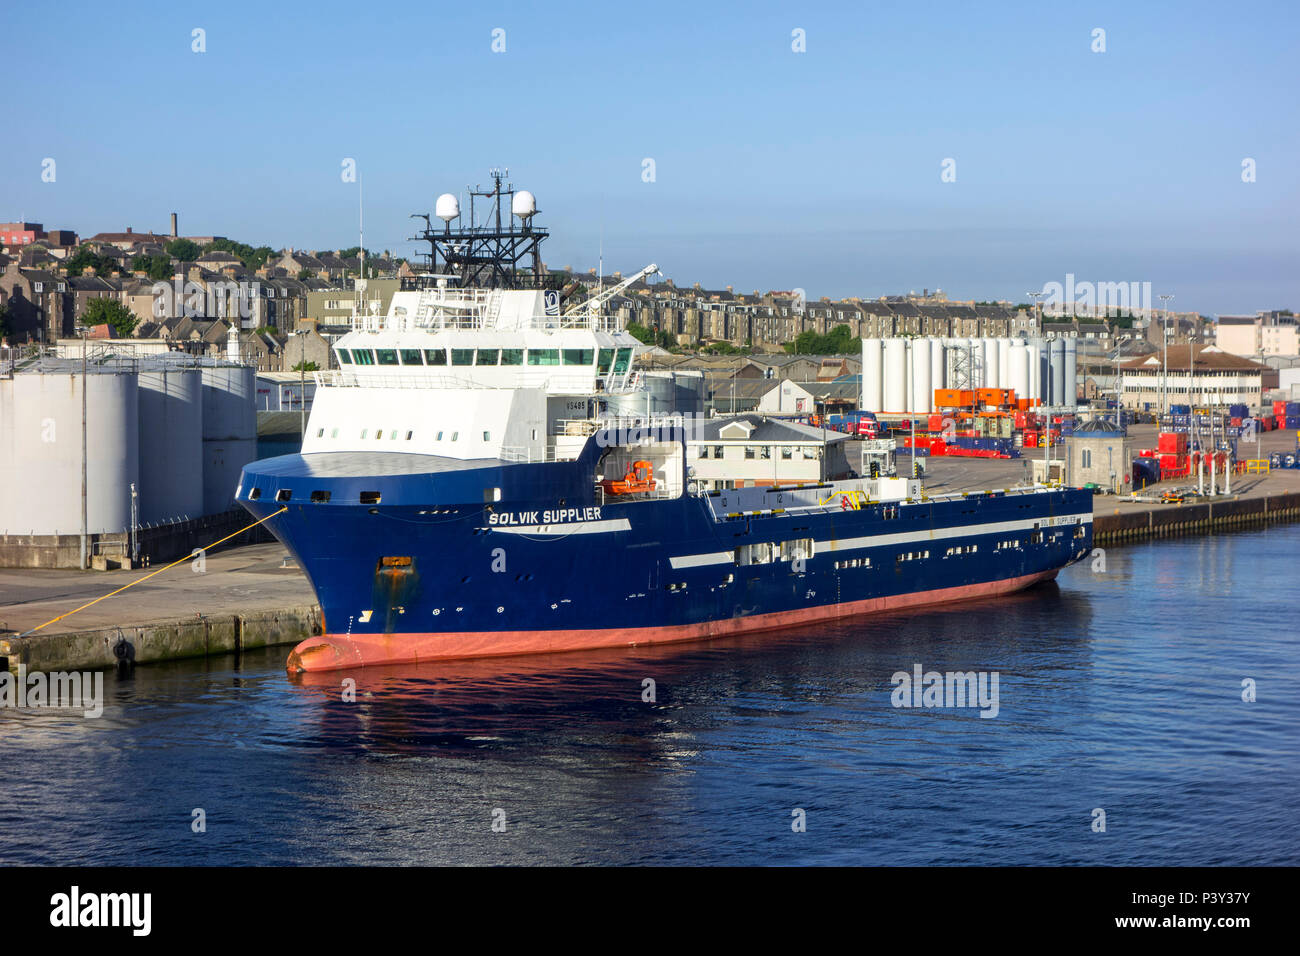 Solvik Lieferant, offshore Tug/Lieferung Schiff im Hafen von Aberdeen, Aberdeenshire, Schottland angedockt, Großbritannien Stockfoto